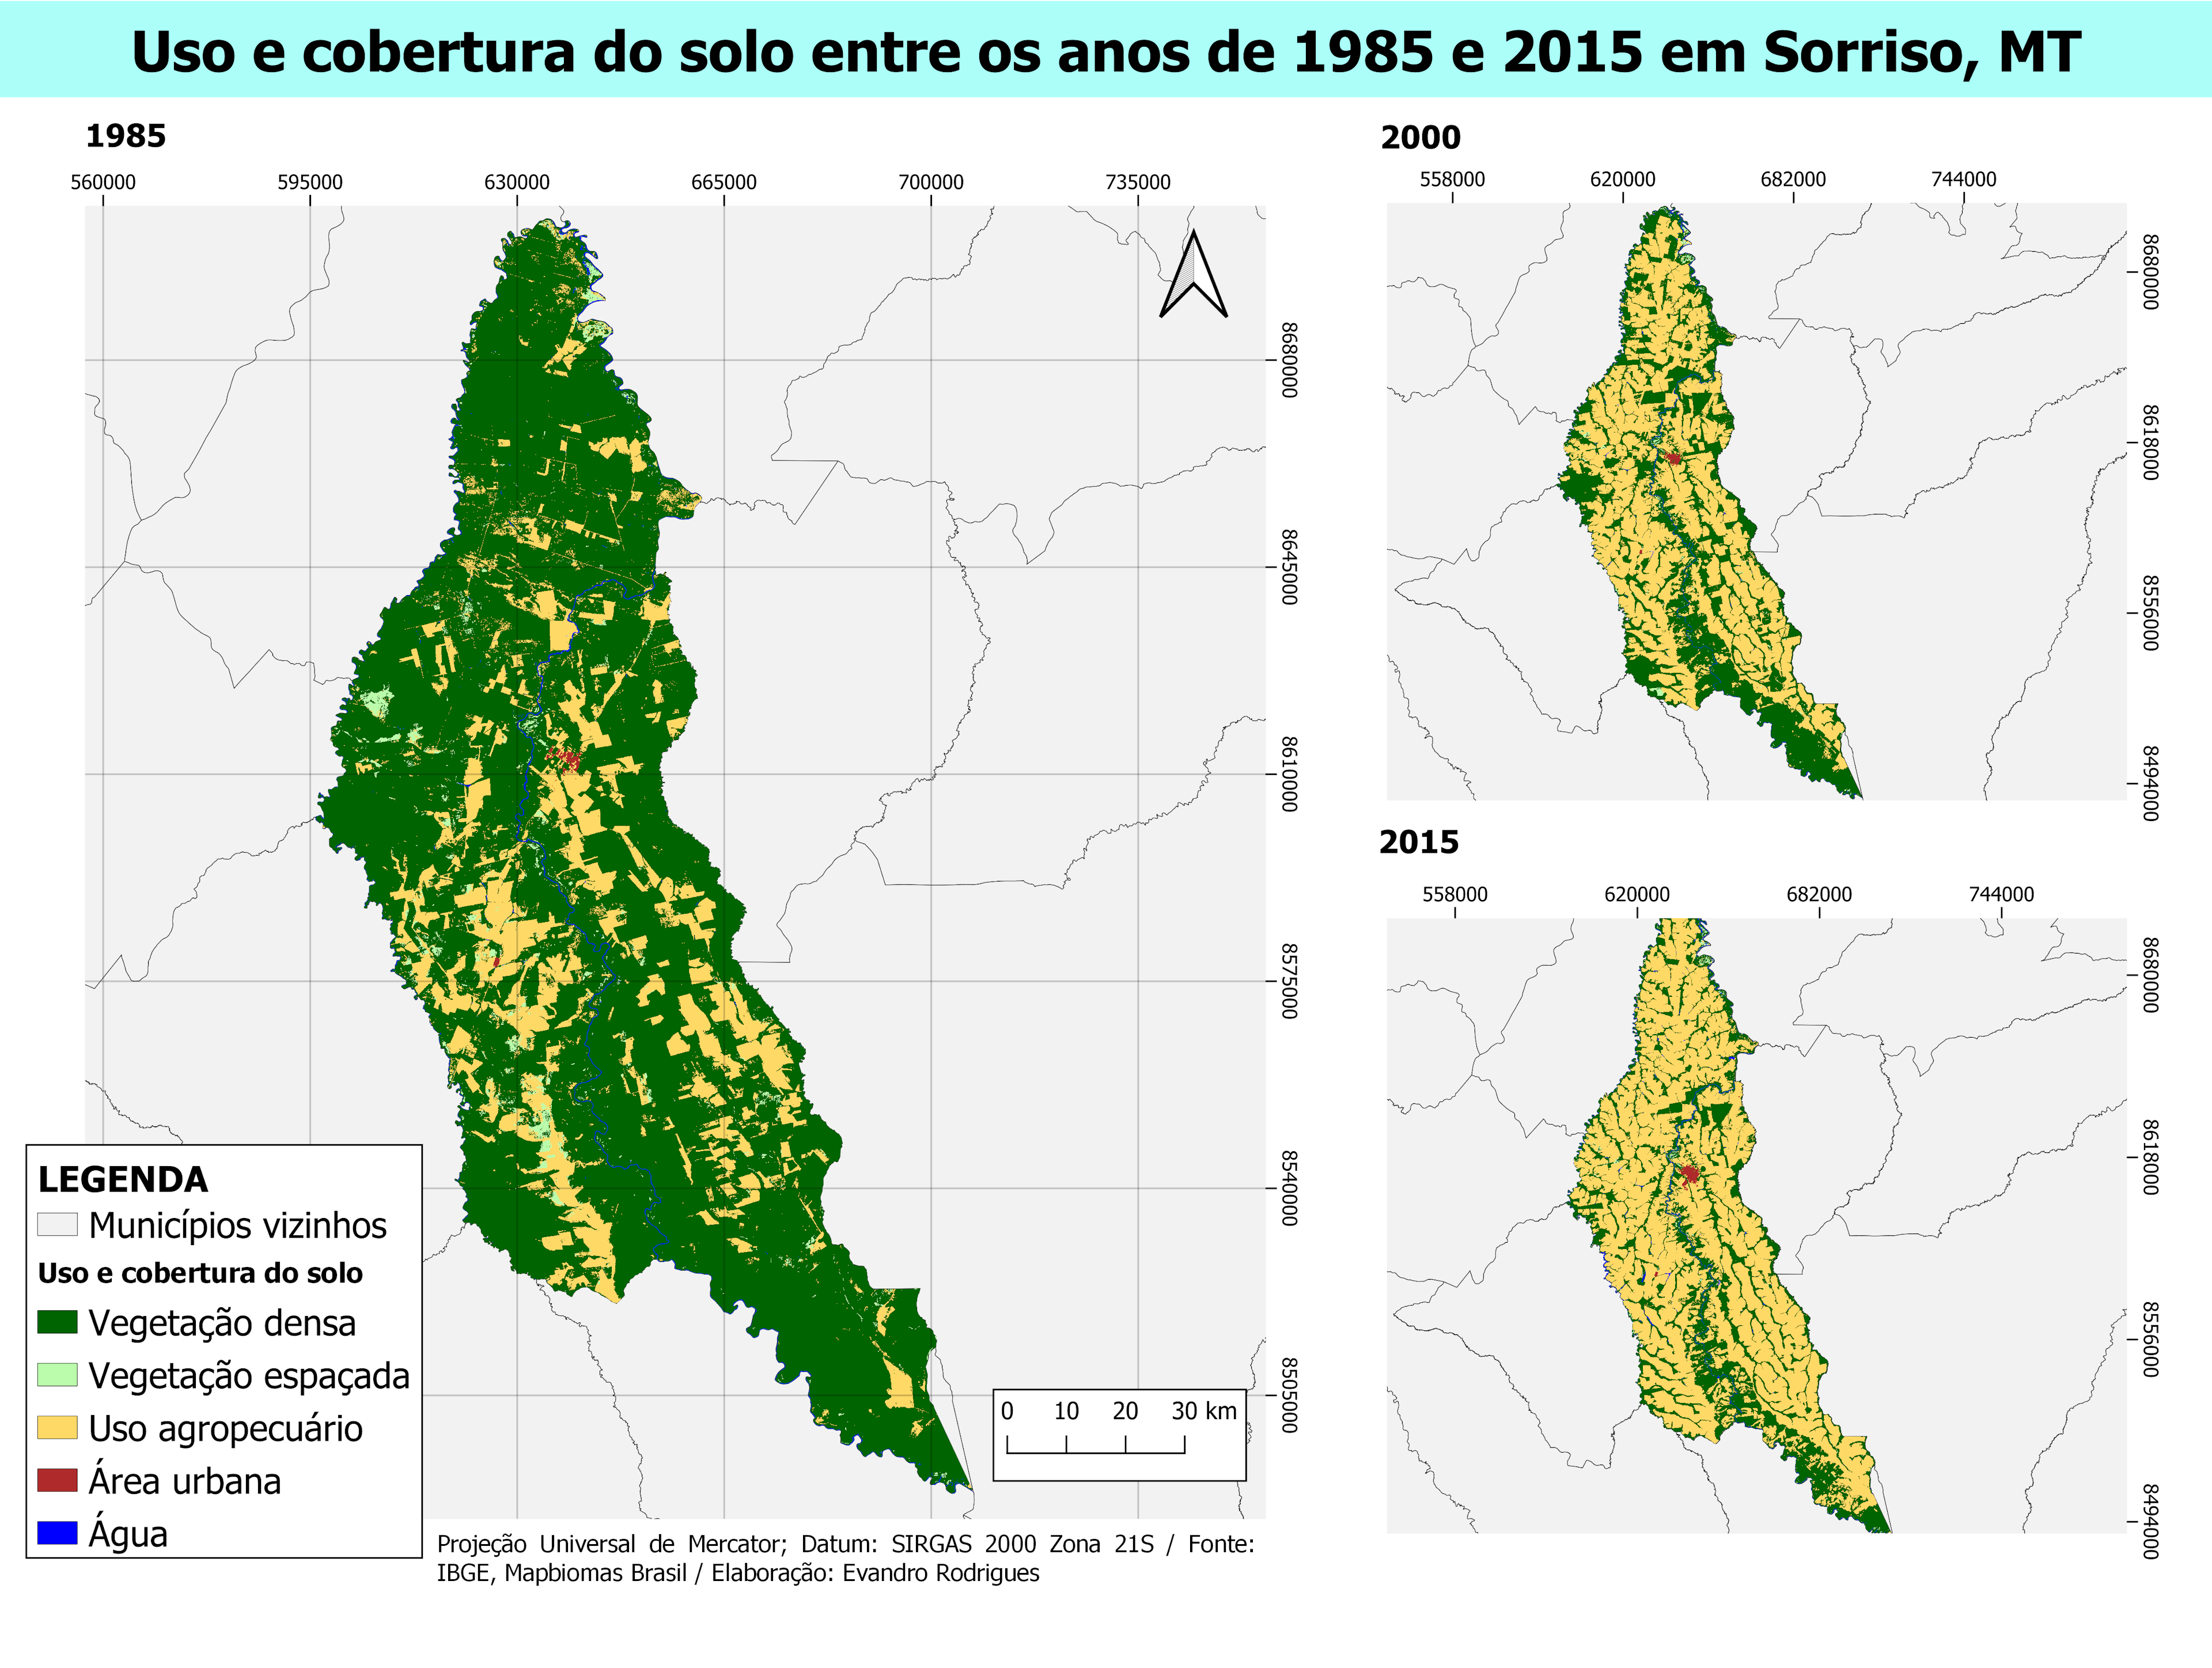 Sorriso, Mato Grosso land cover